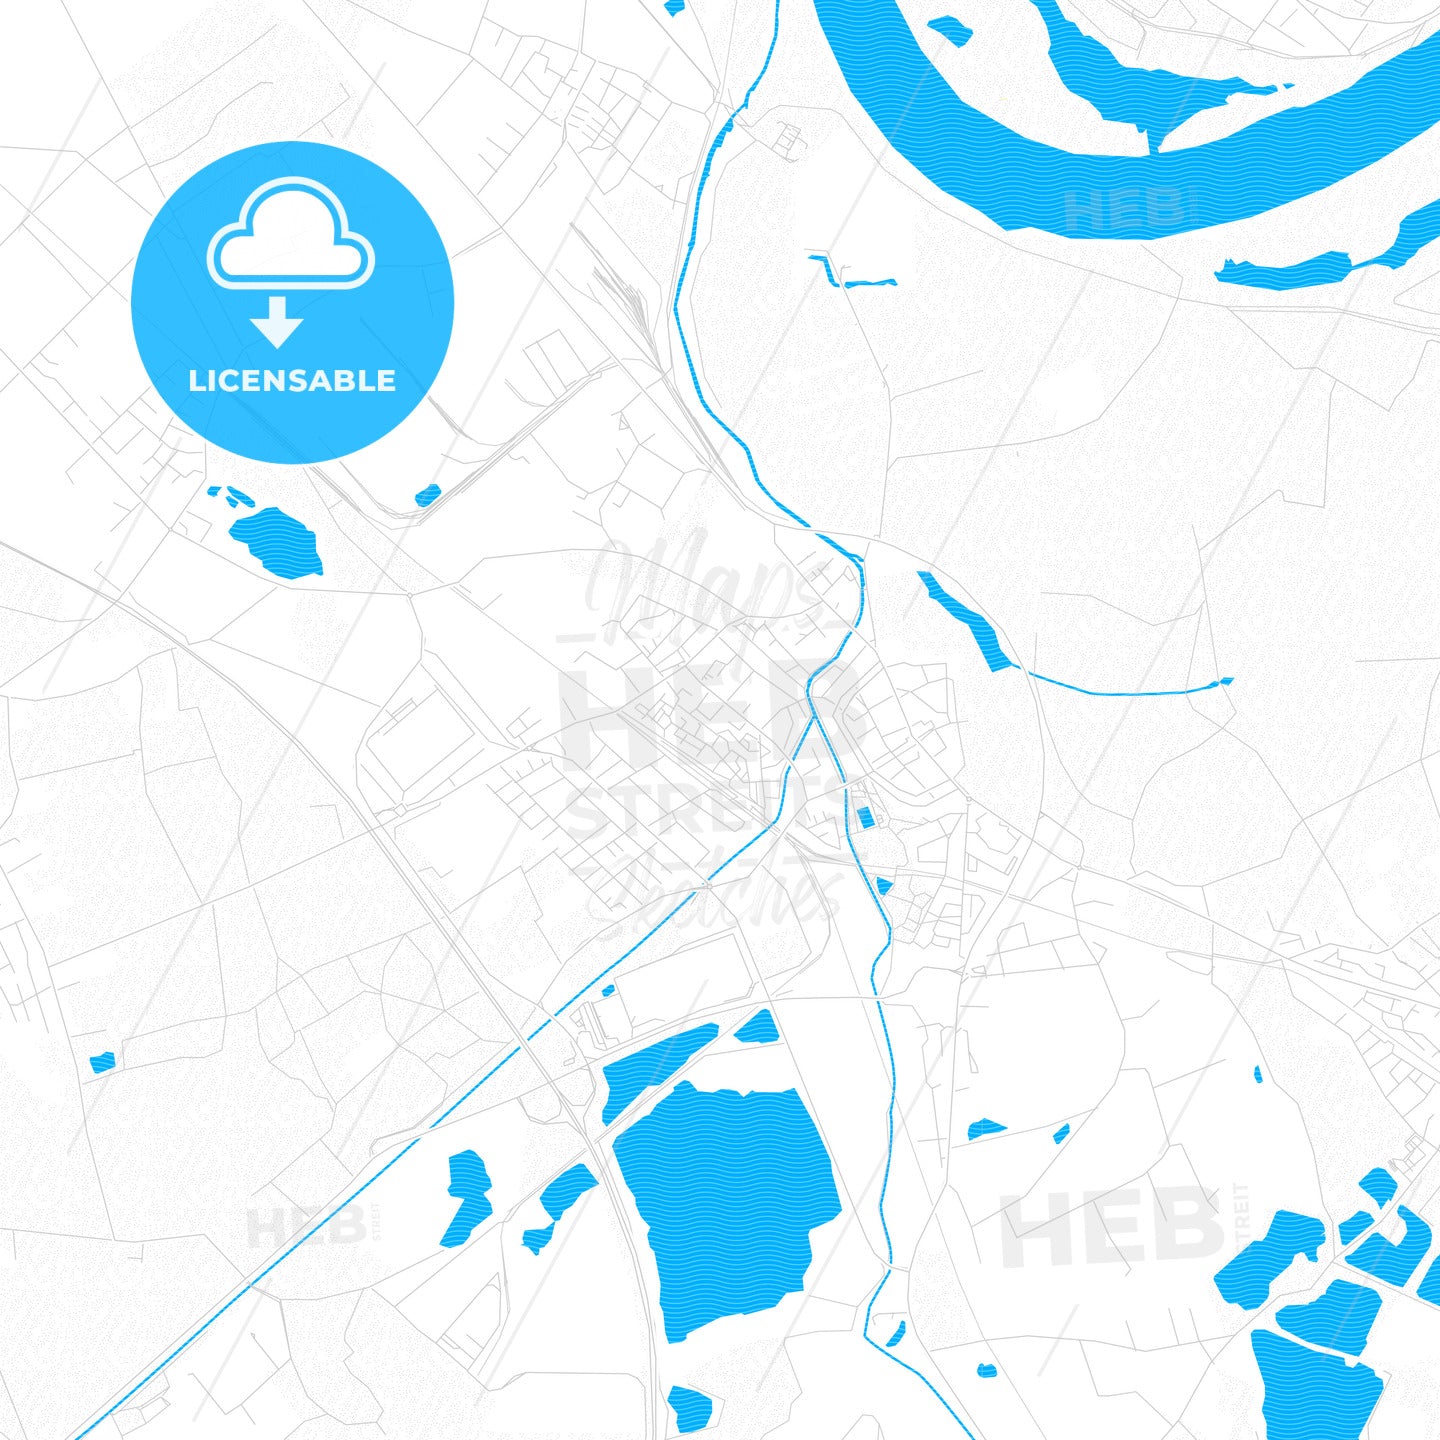 Rheinberg, Germany PDF vector map with water in focus